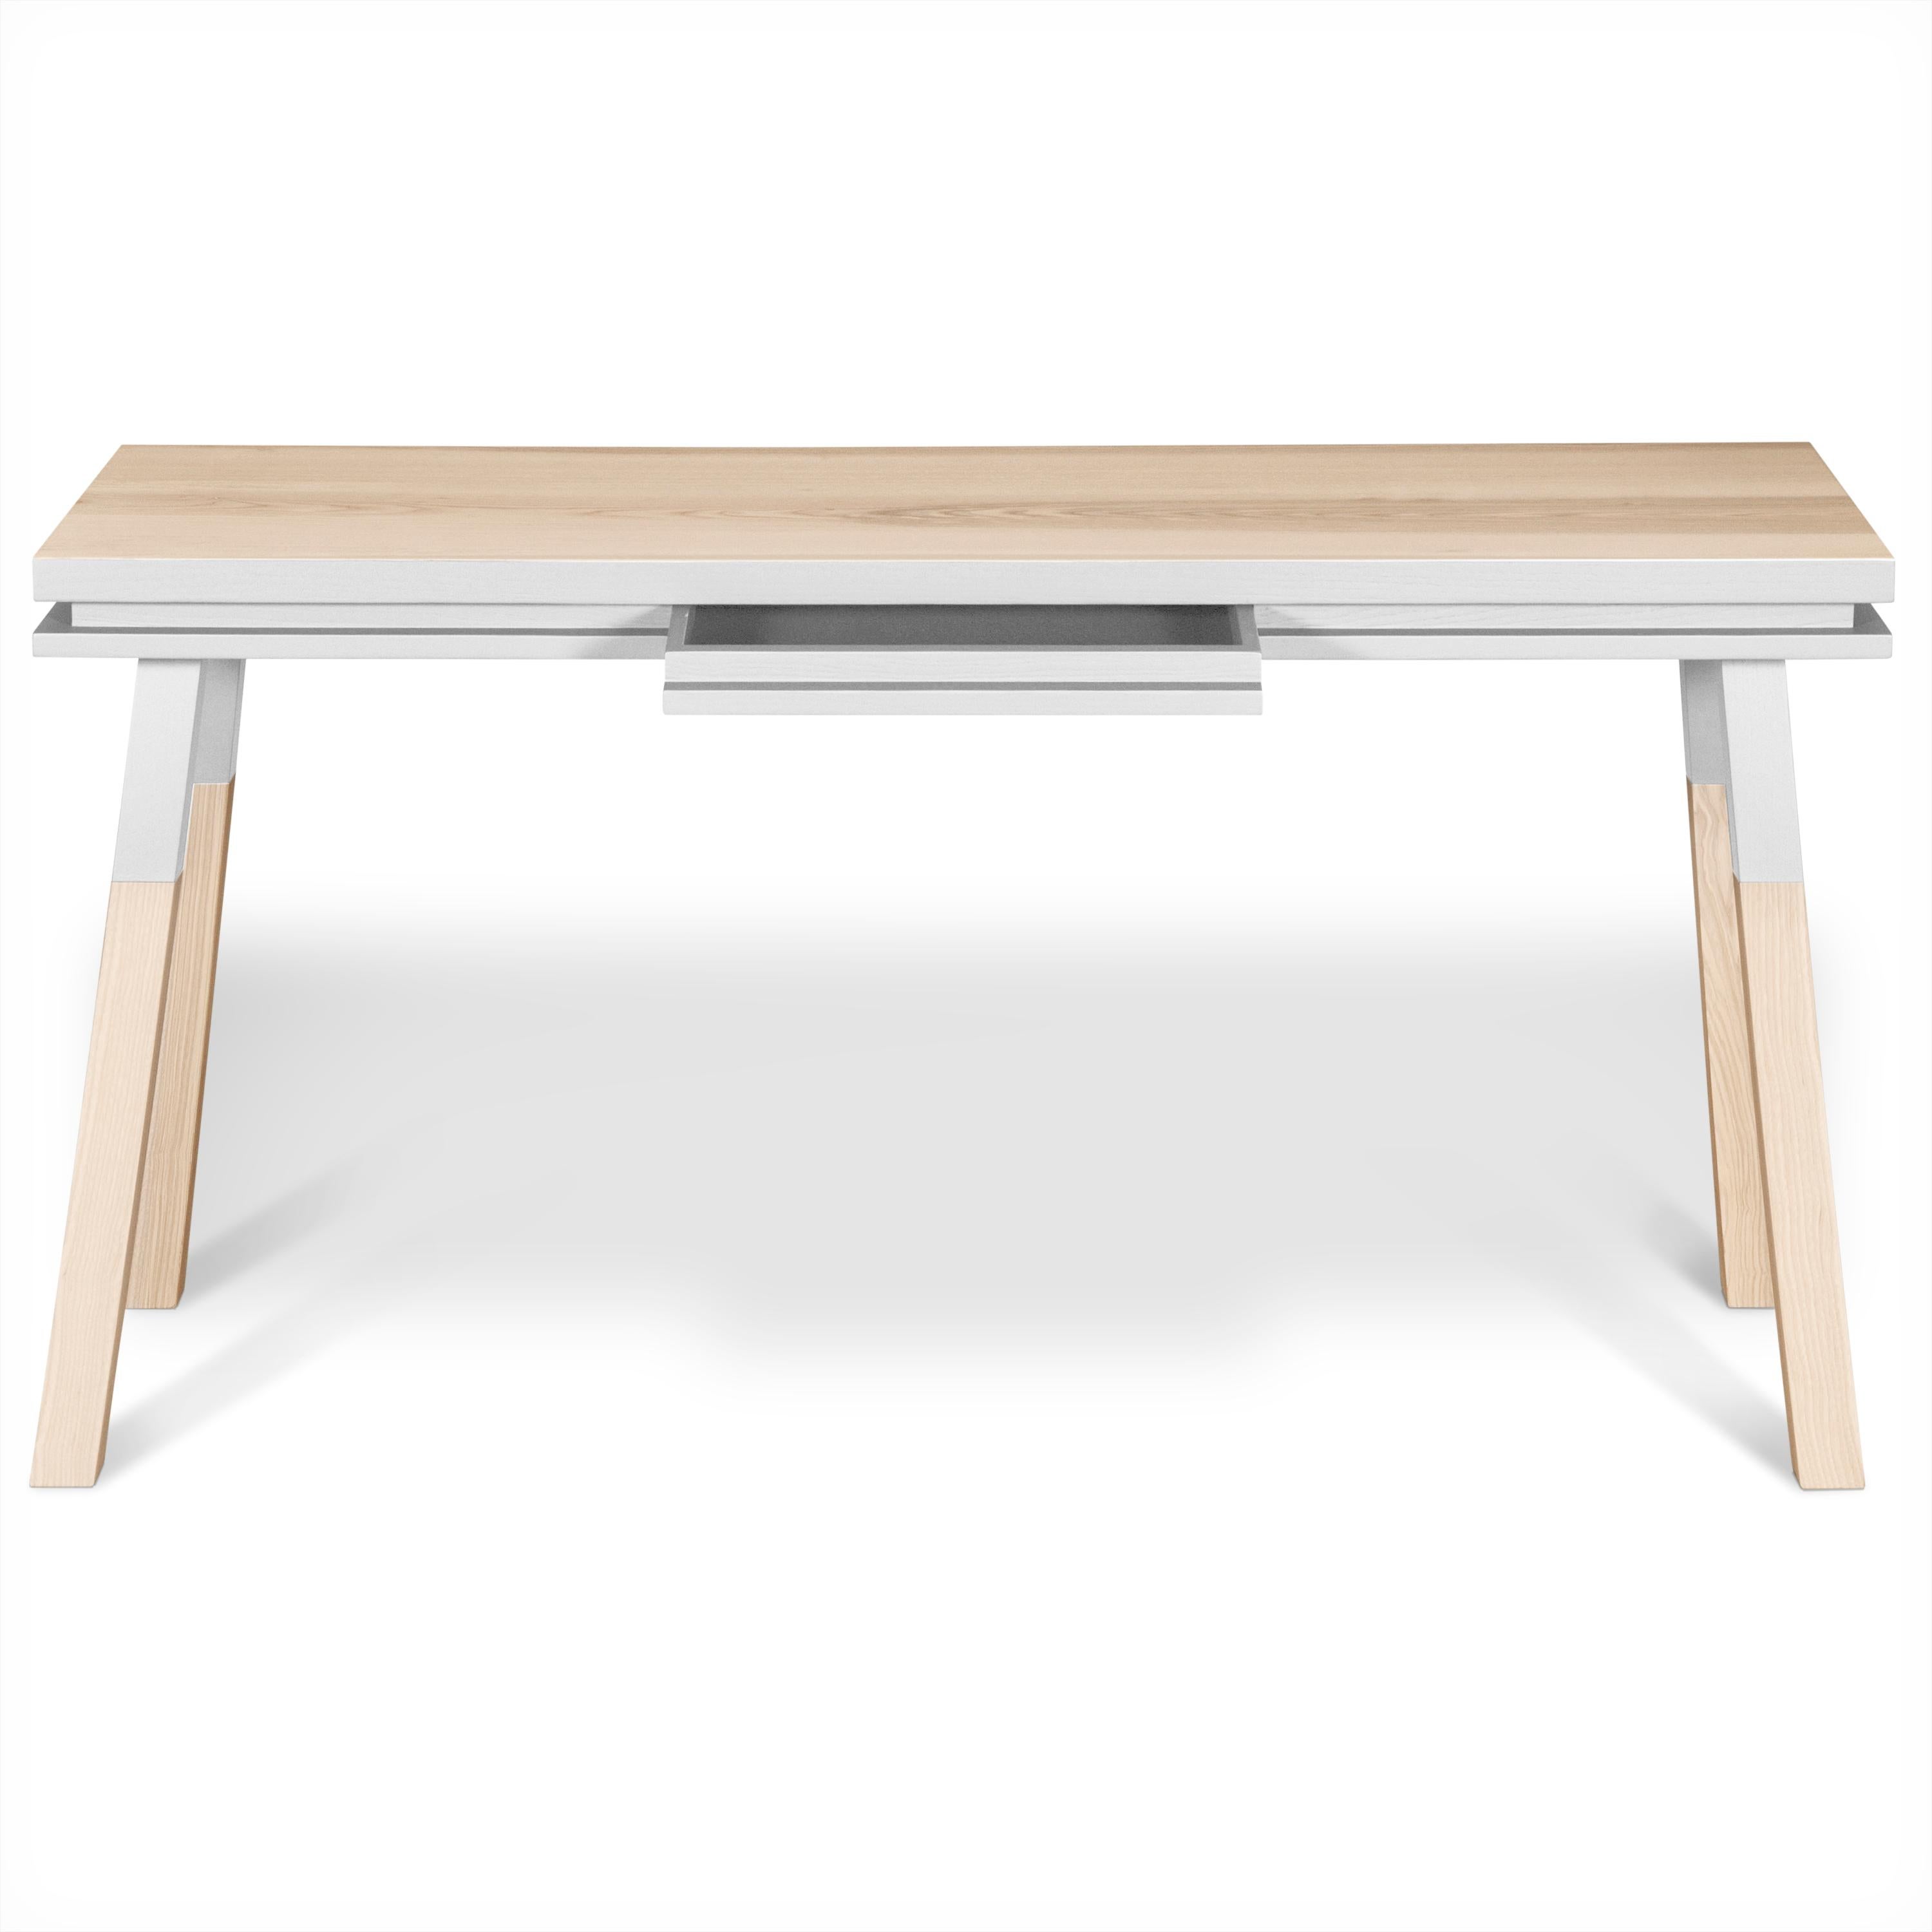 Français Table à écrire blanche en bois massif, am designs par Eric Gizard, Paris - French craft  en vente